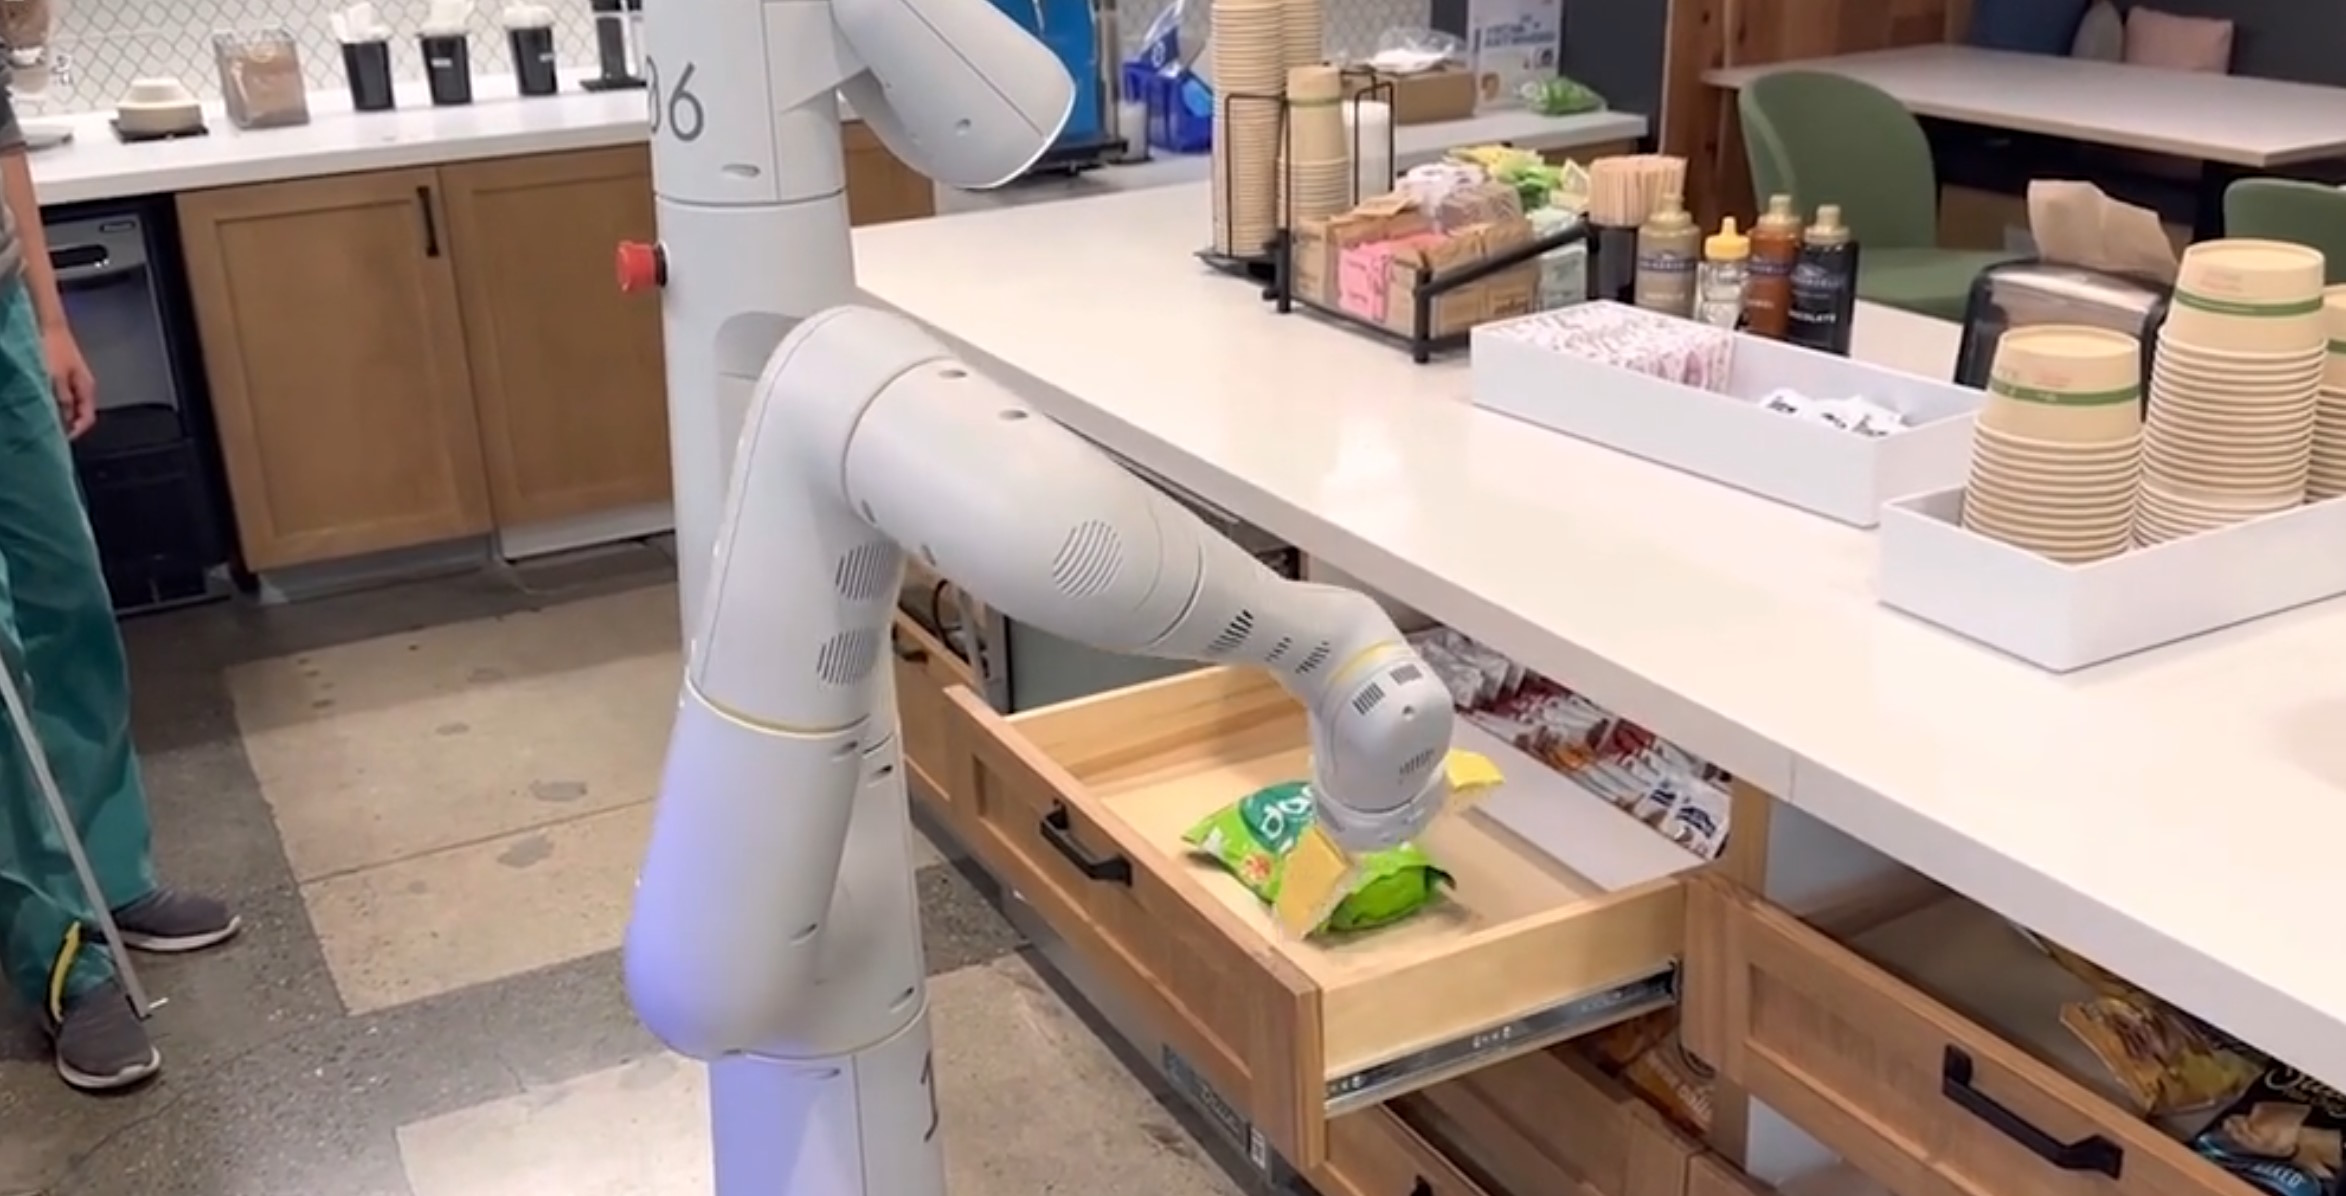 L’intelligence artificielle PaLM-E peut piloter ce robot pour effectuer des tâches à partir d’une simple requête. © Google